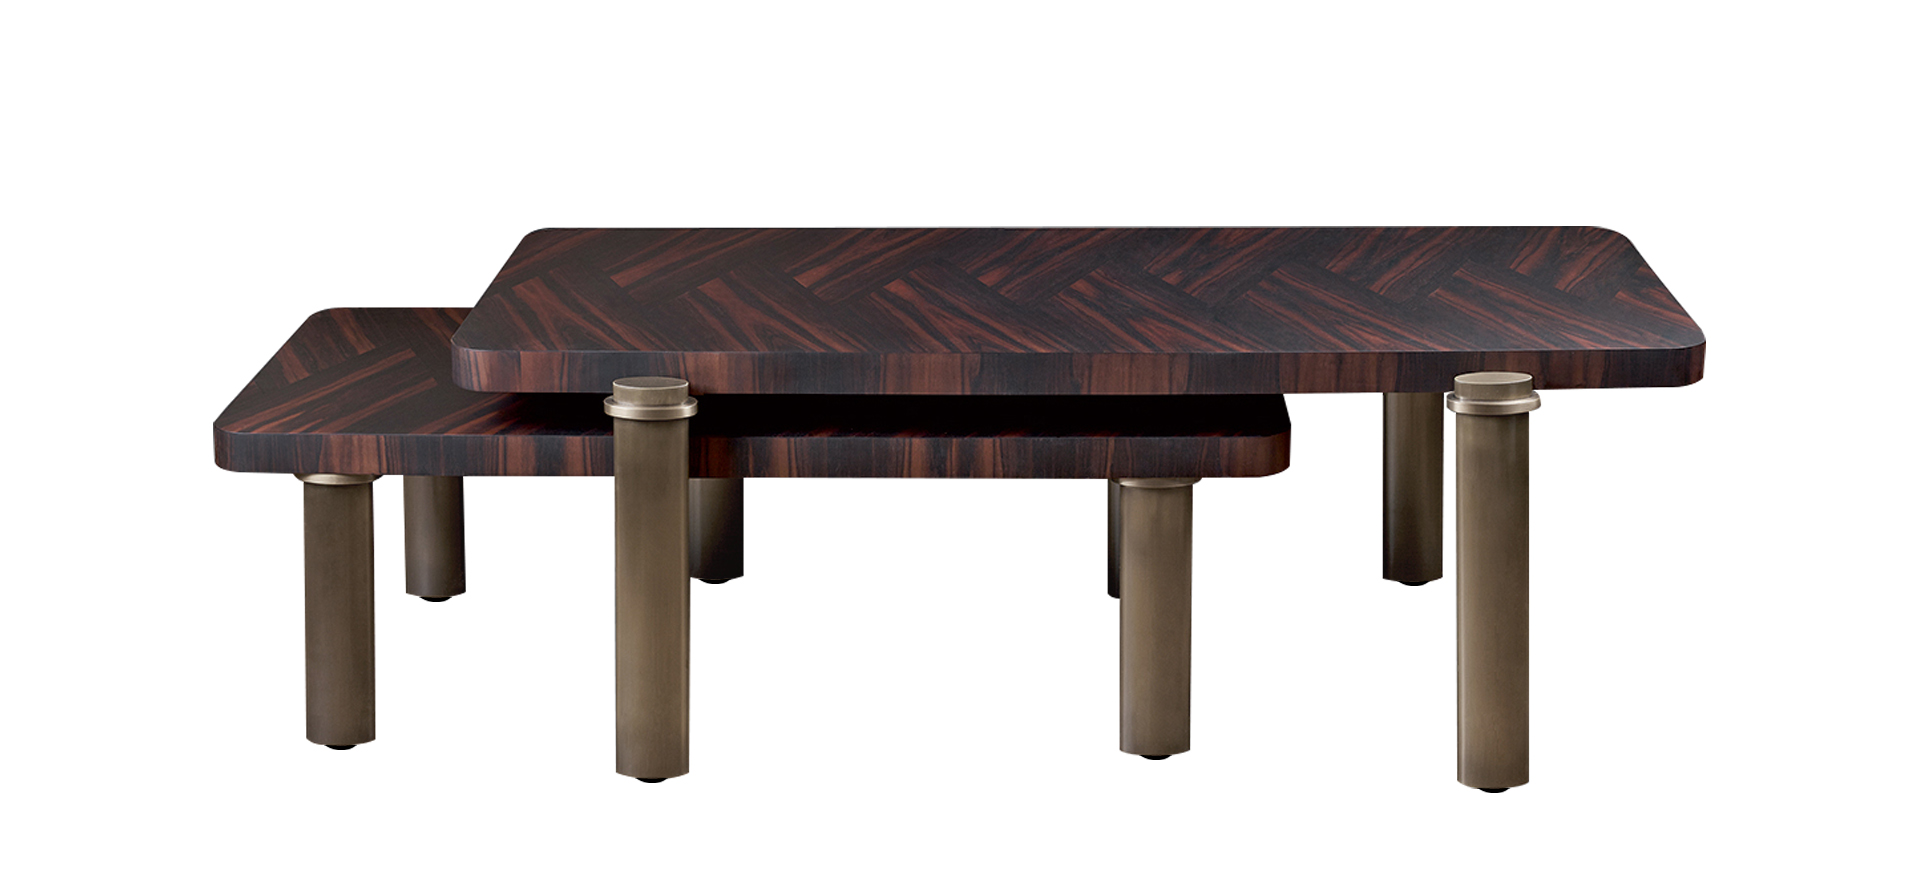 Passepartout, ce sont deux tables basses en bois avec des finitions en bronze. Ces meubles figurent dans le catalogue Promemoria | Promemoria